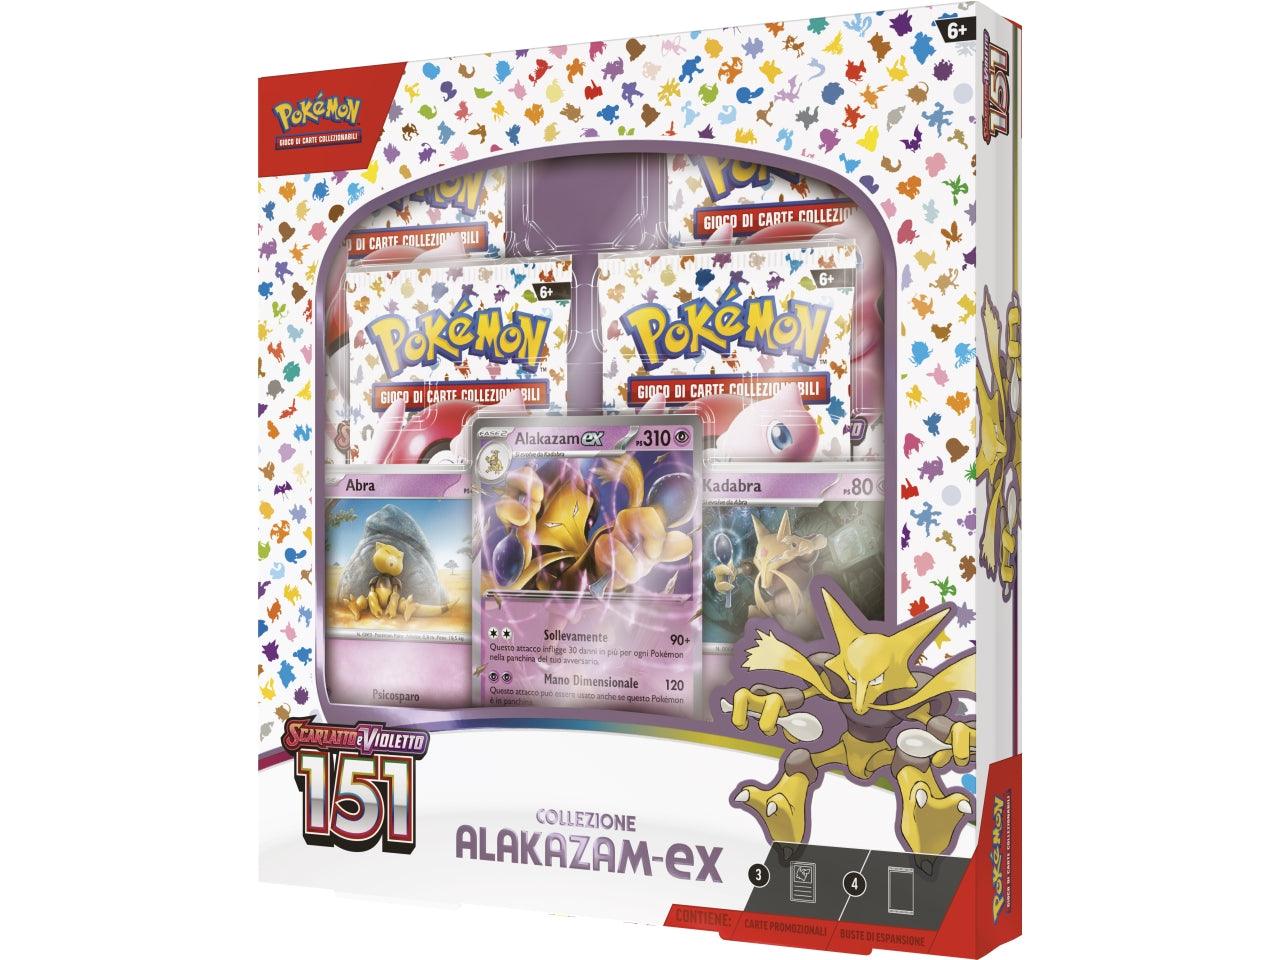 Pokemon - Collezione Alakazam EX - ScarlattoVioletto 151 - Magic Dreams Store